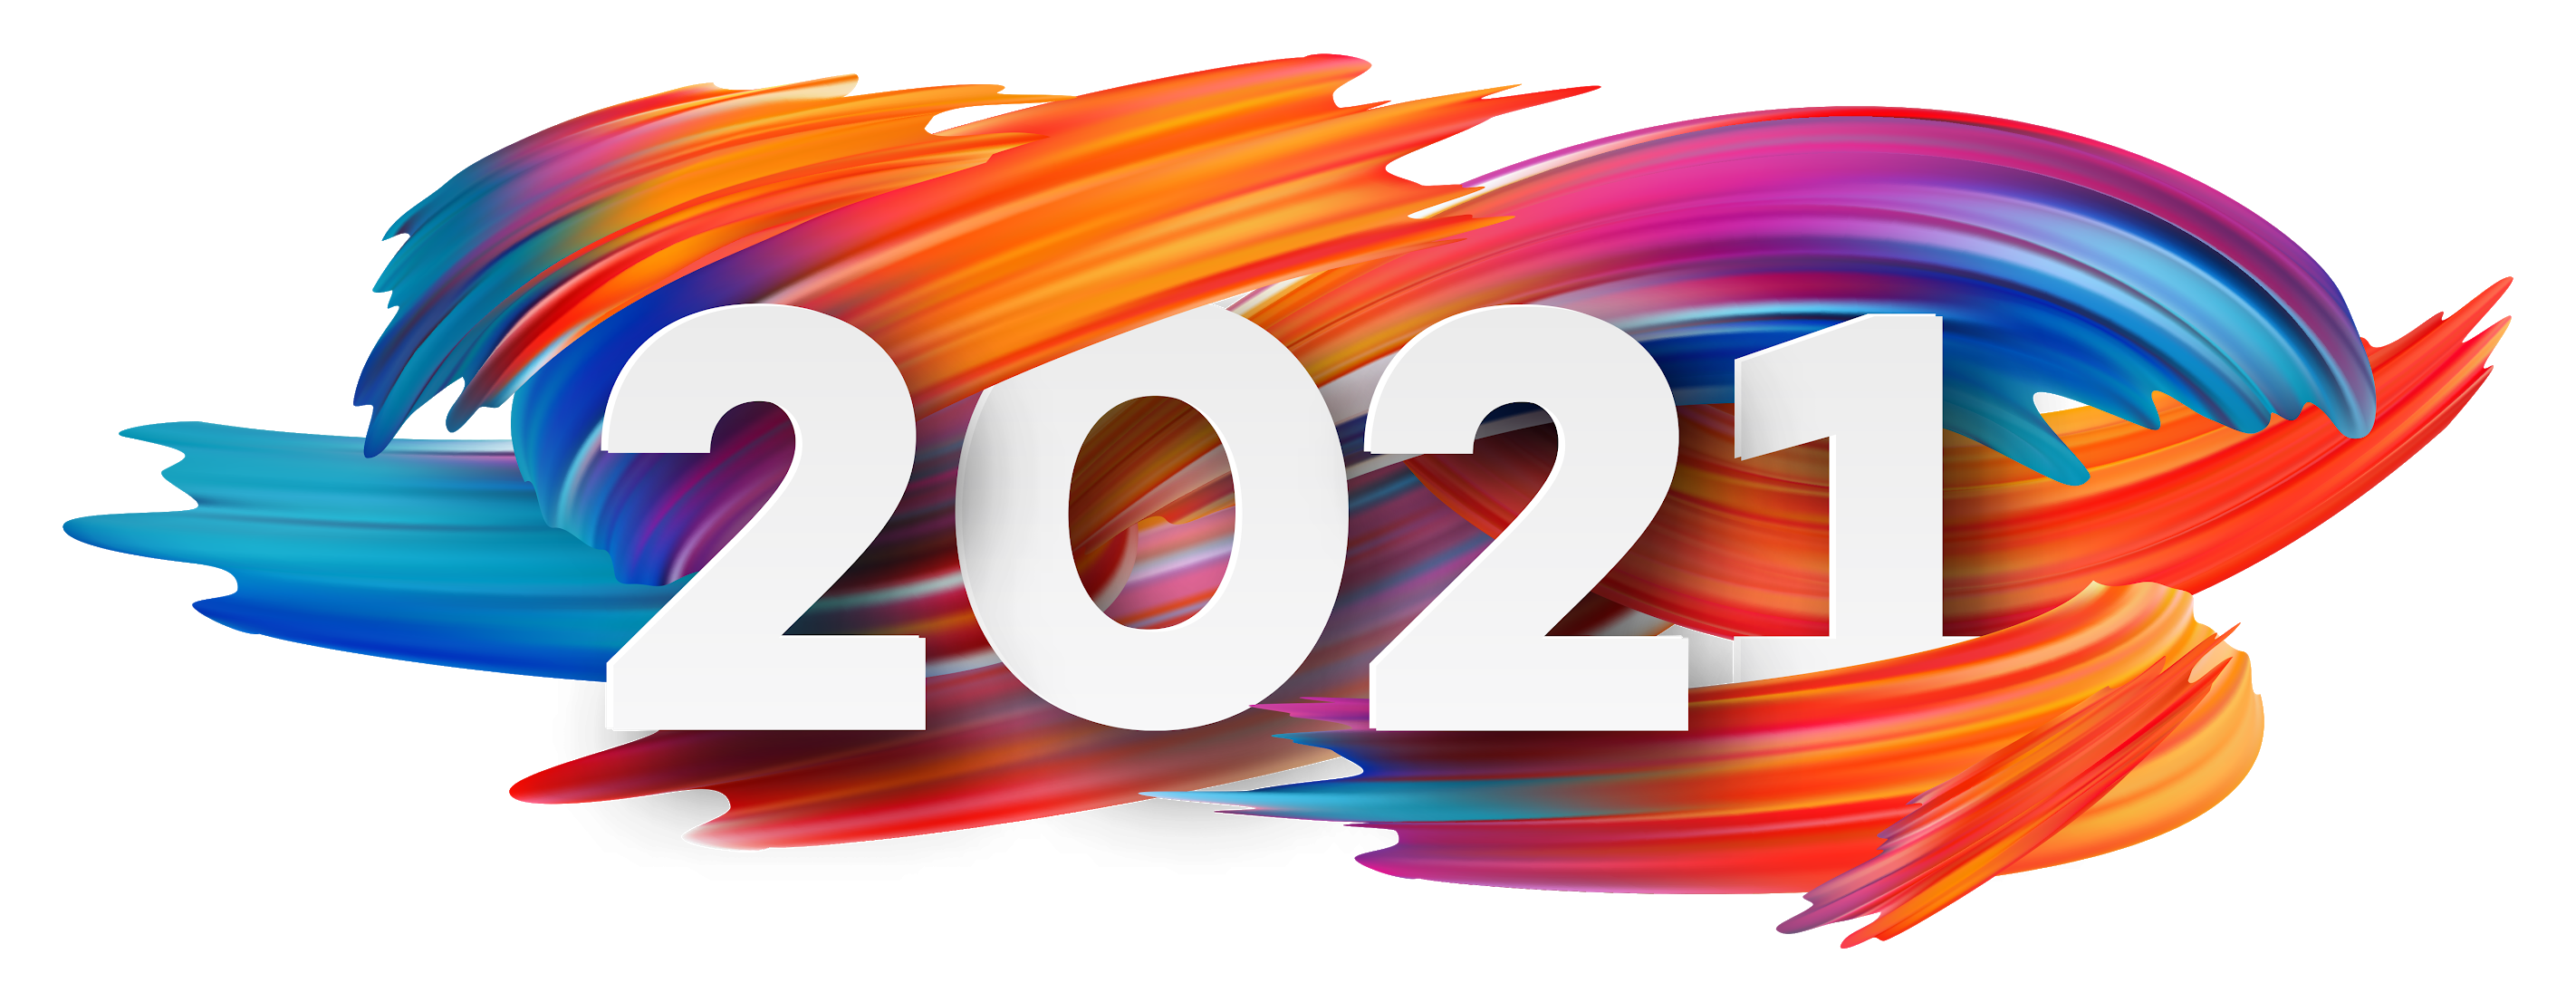 2021. 2021г надпись. 2021 Год надпись. Выборы 2021 логотип. Выпуск 2022 надпись.